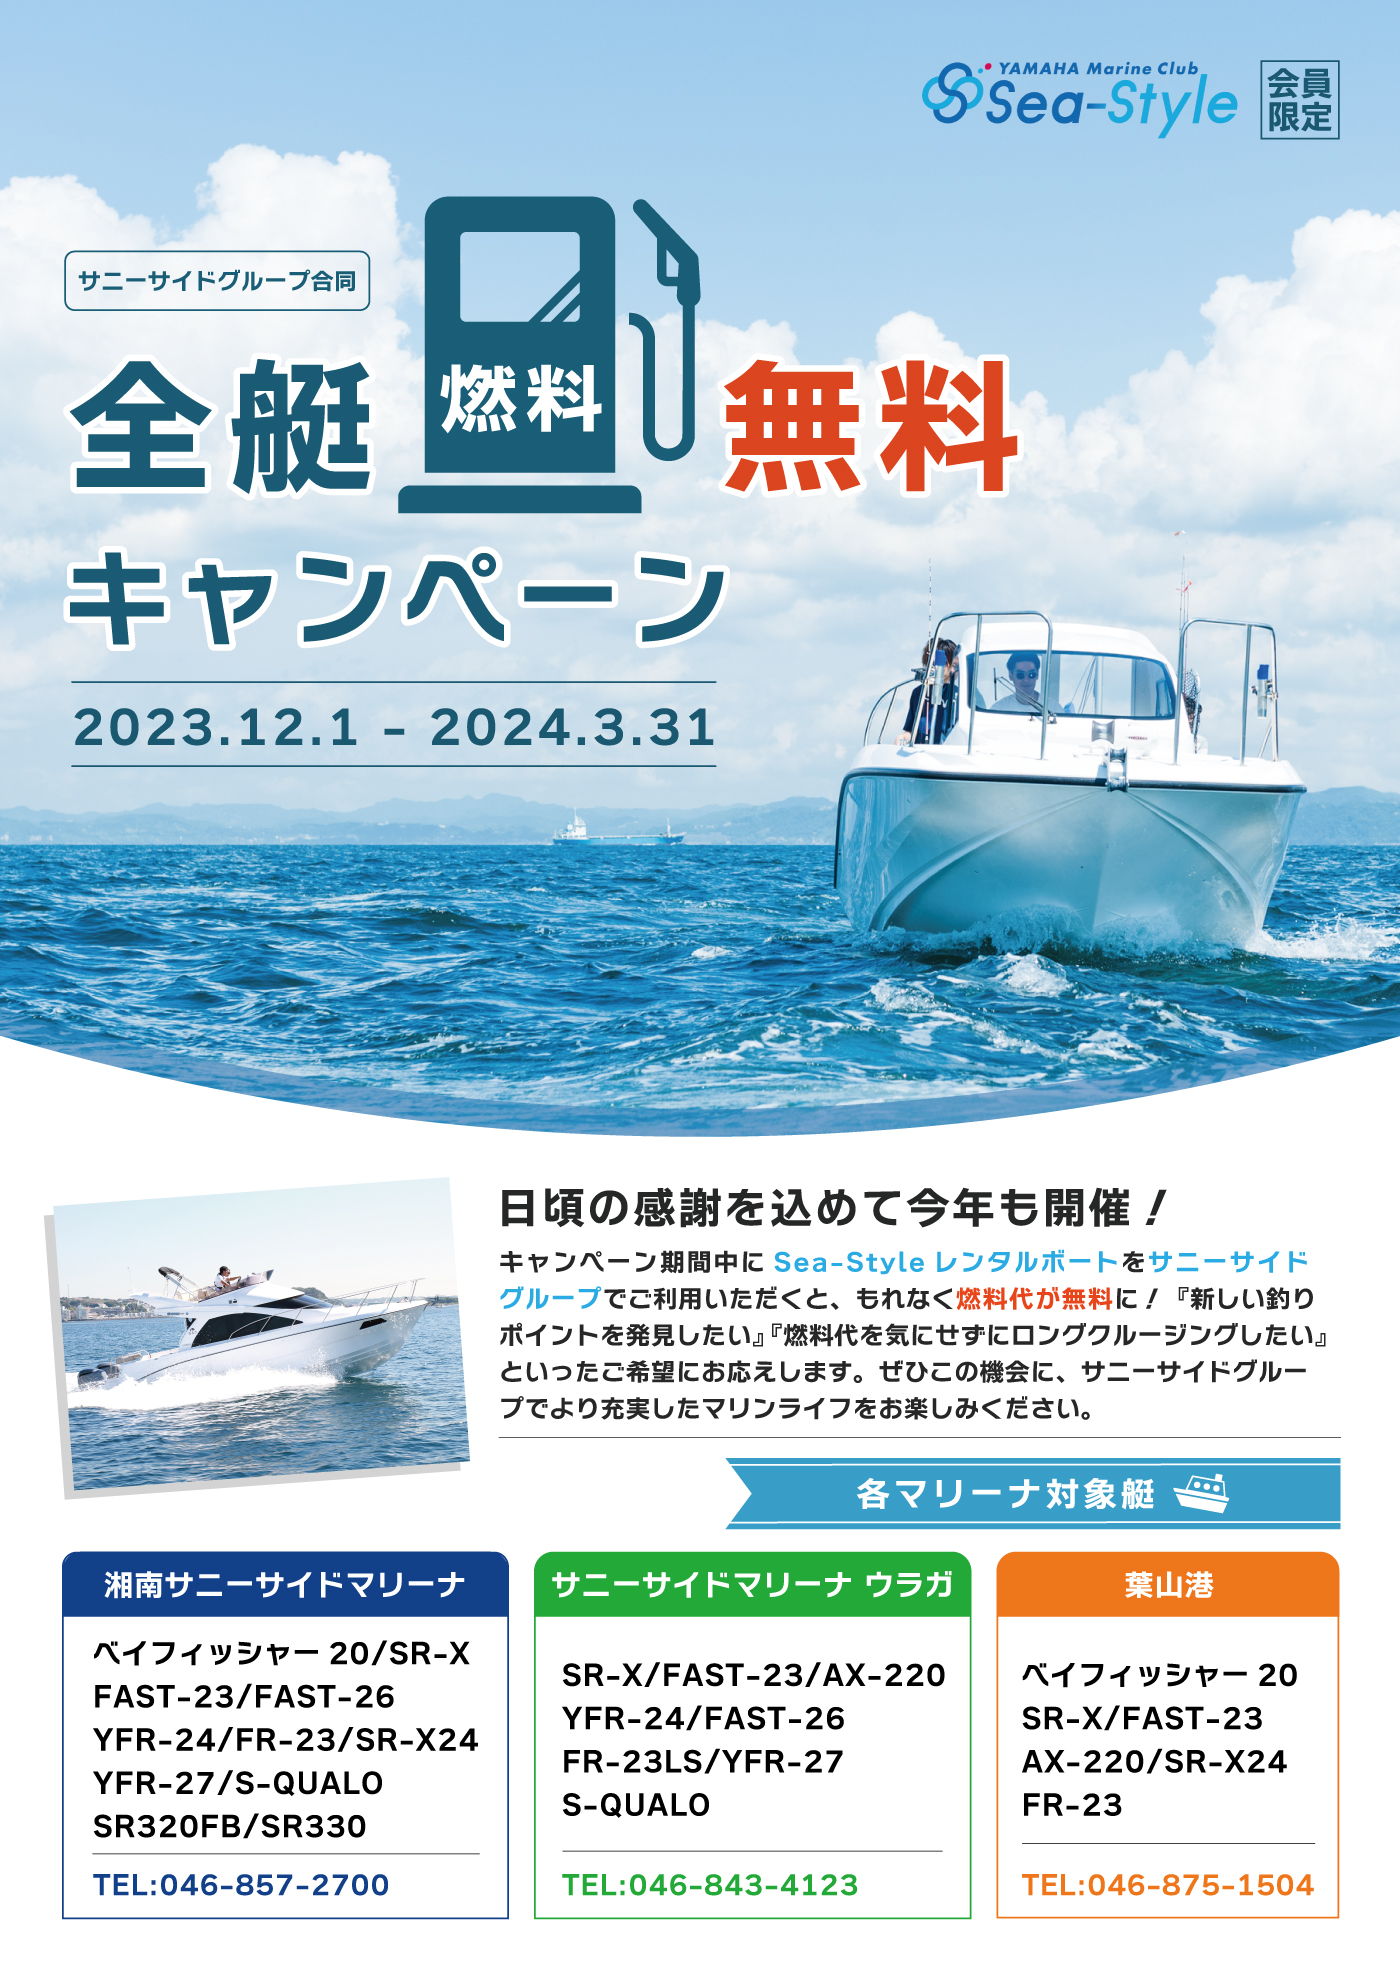 Sea-Style【全艇燃料無料キャンペーン！2023.12.1～】 – サニーサイド